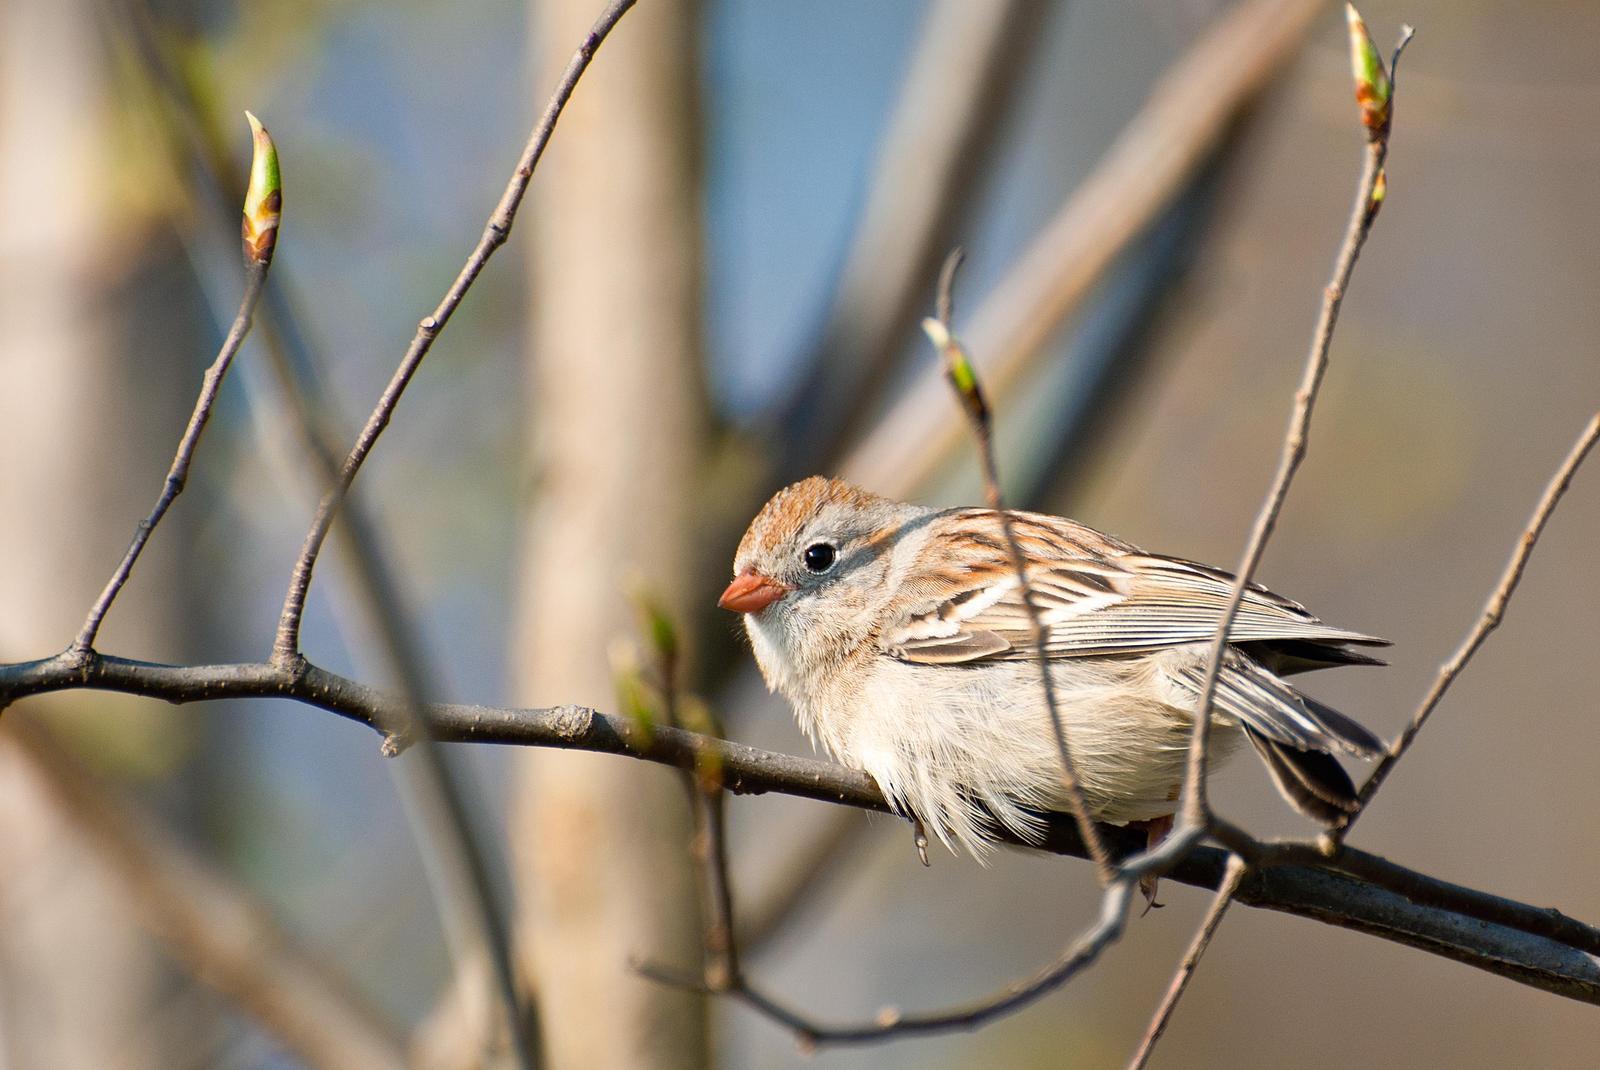 Field Sparrow Photo by Mark Rozmarynowycz